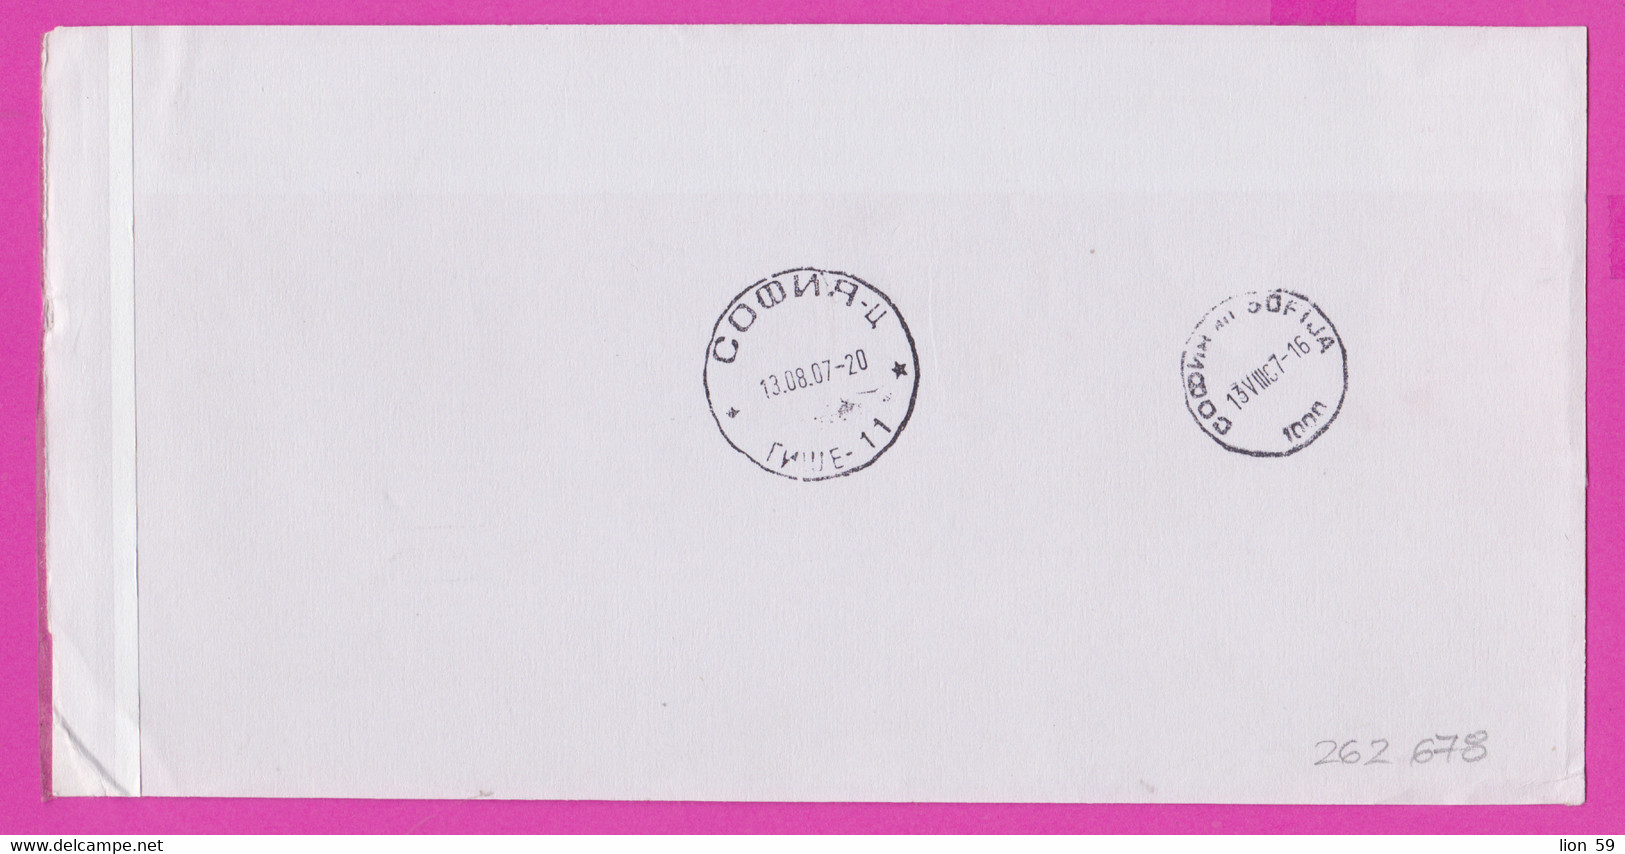 262678 / Form CN 07 Bulgaria 2007 Sofia - Netherlands - AVIS De Réception /de Livraison /de Paiement/ D'inscription - Lettres & Documents